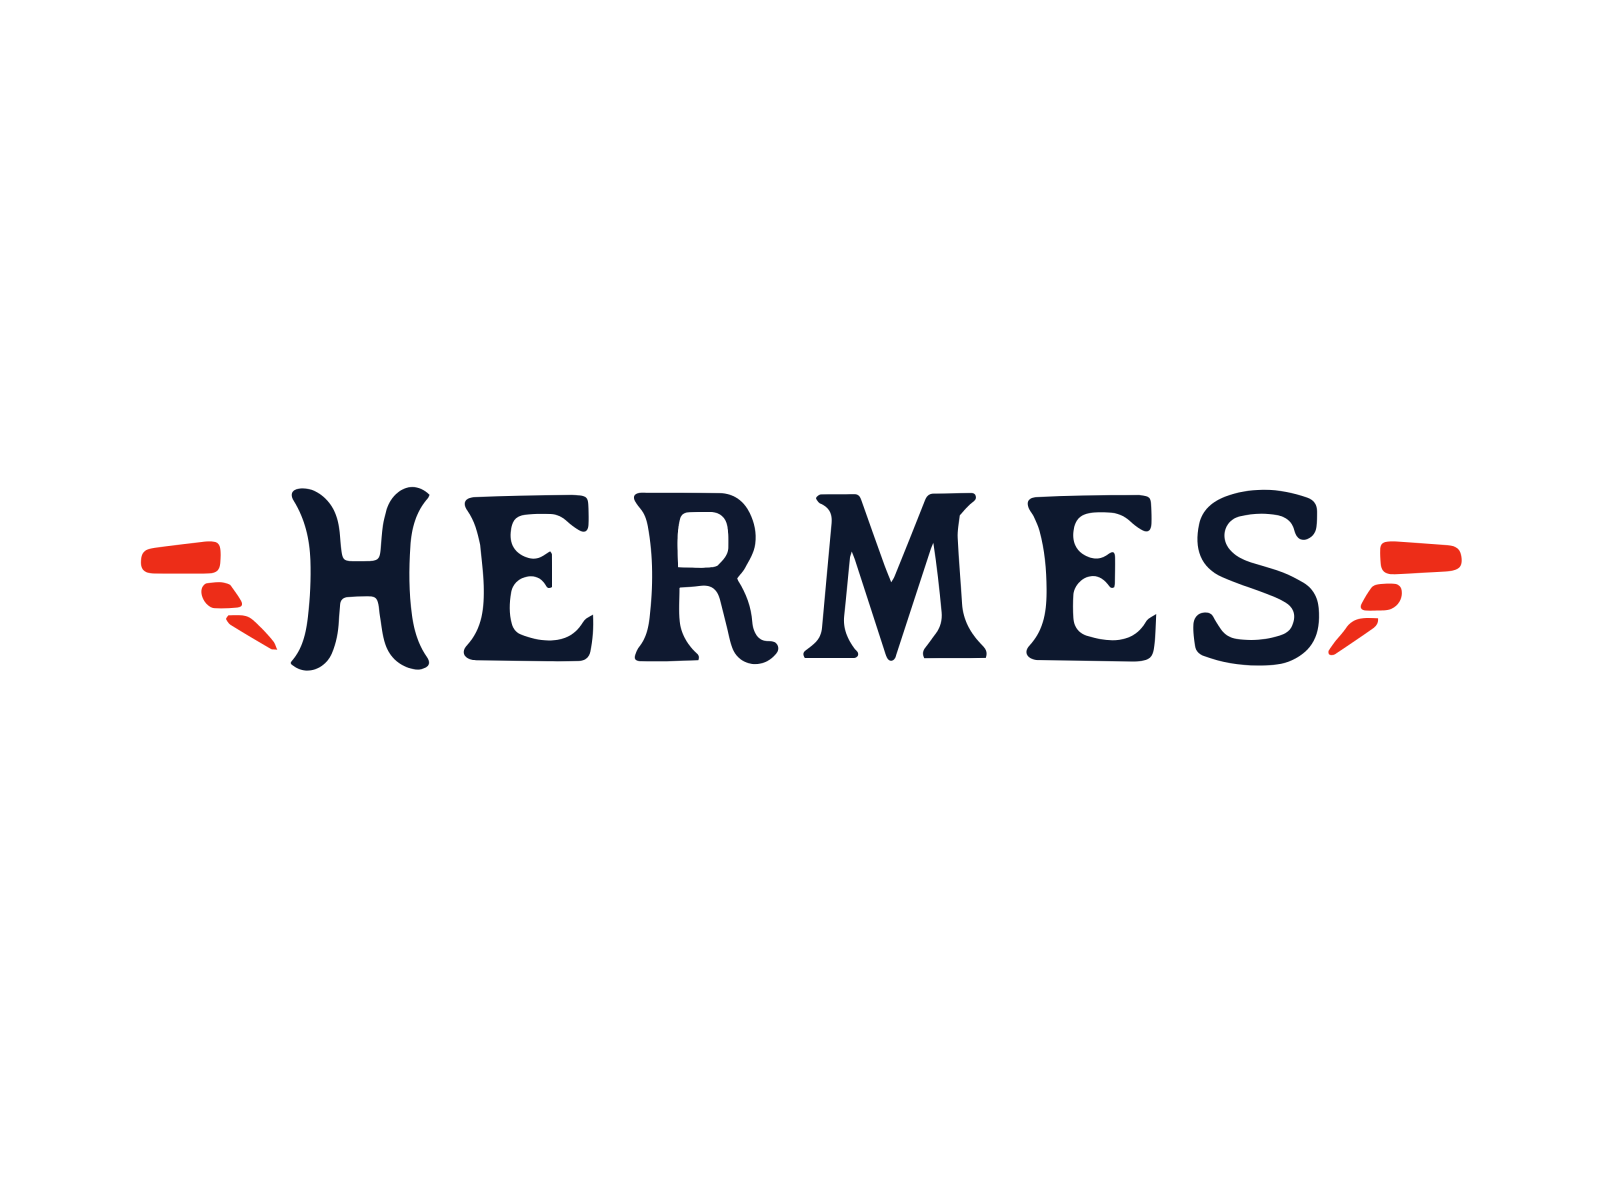 Hermes by ArtformDev™ on Dribbble